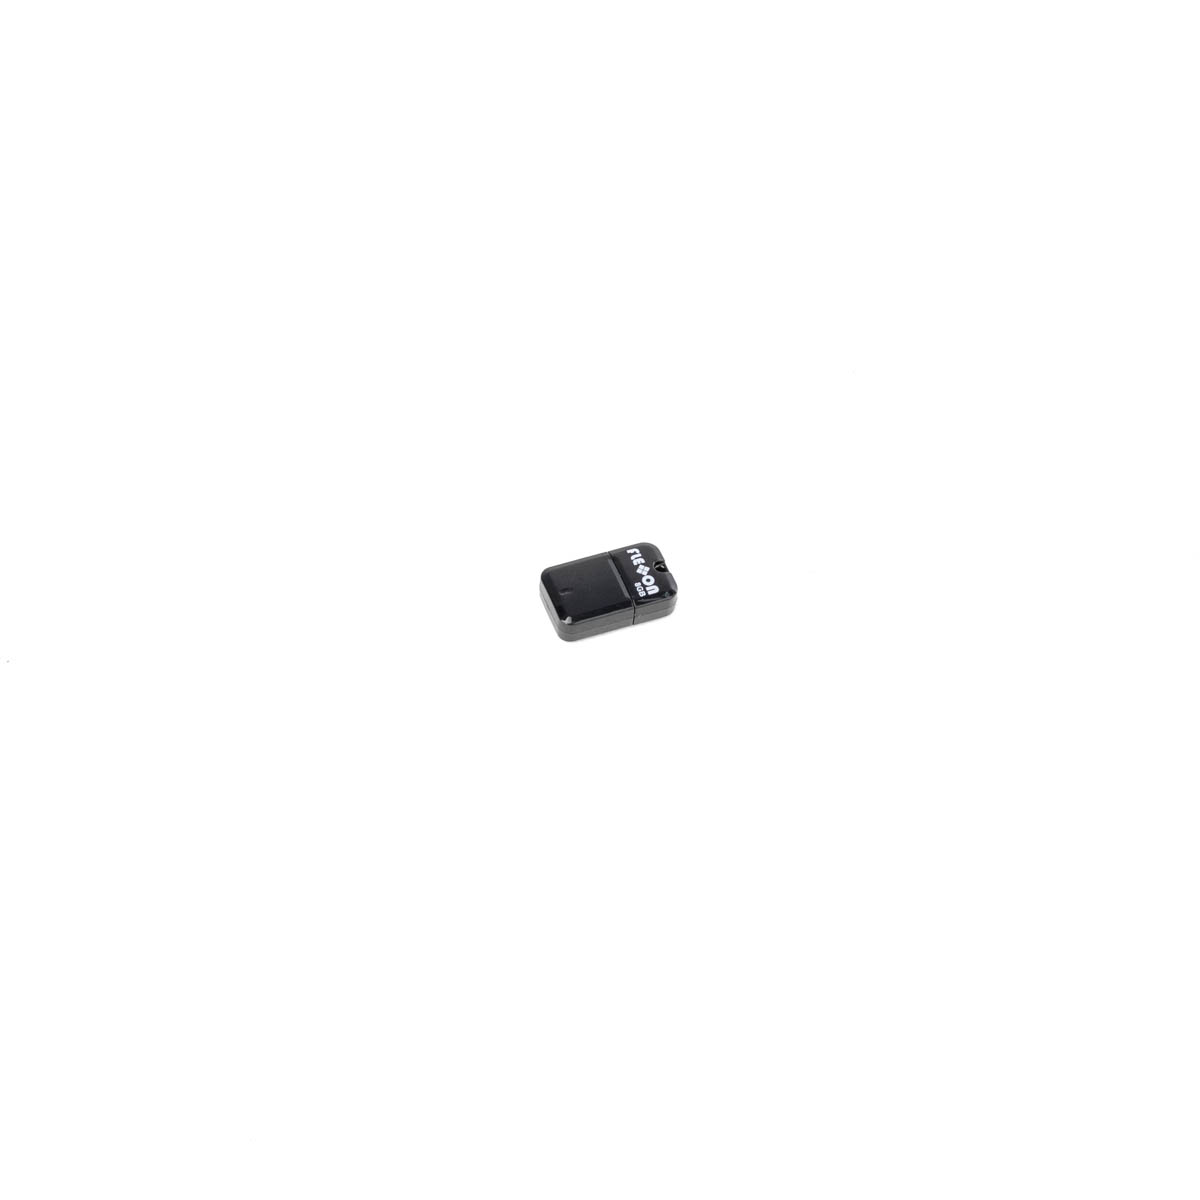 USB-Stick für ES-Geräte